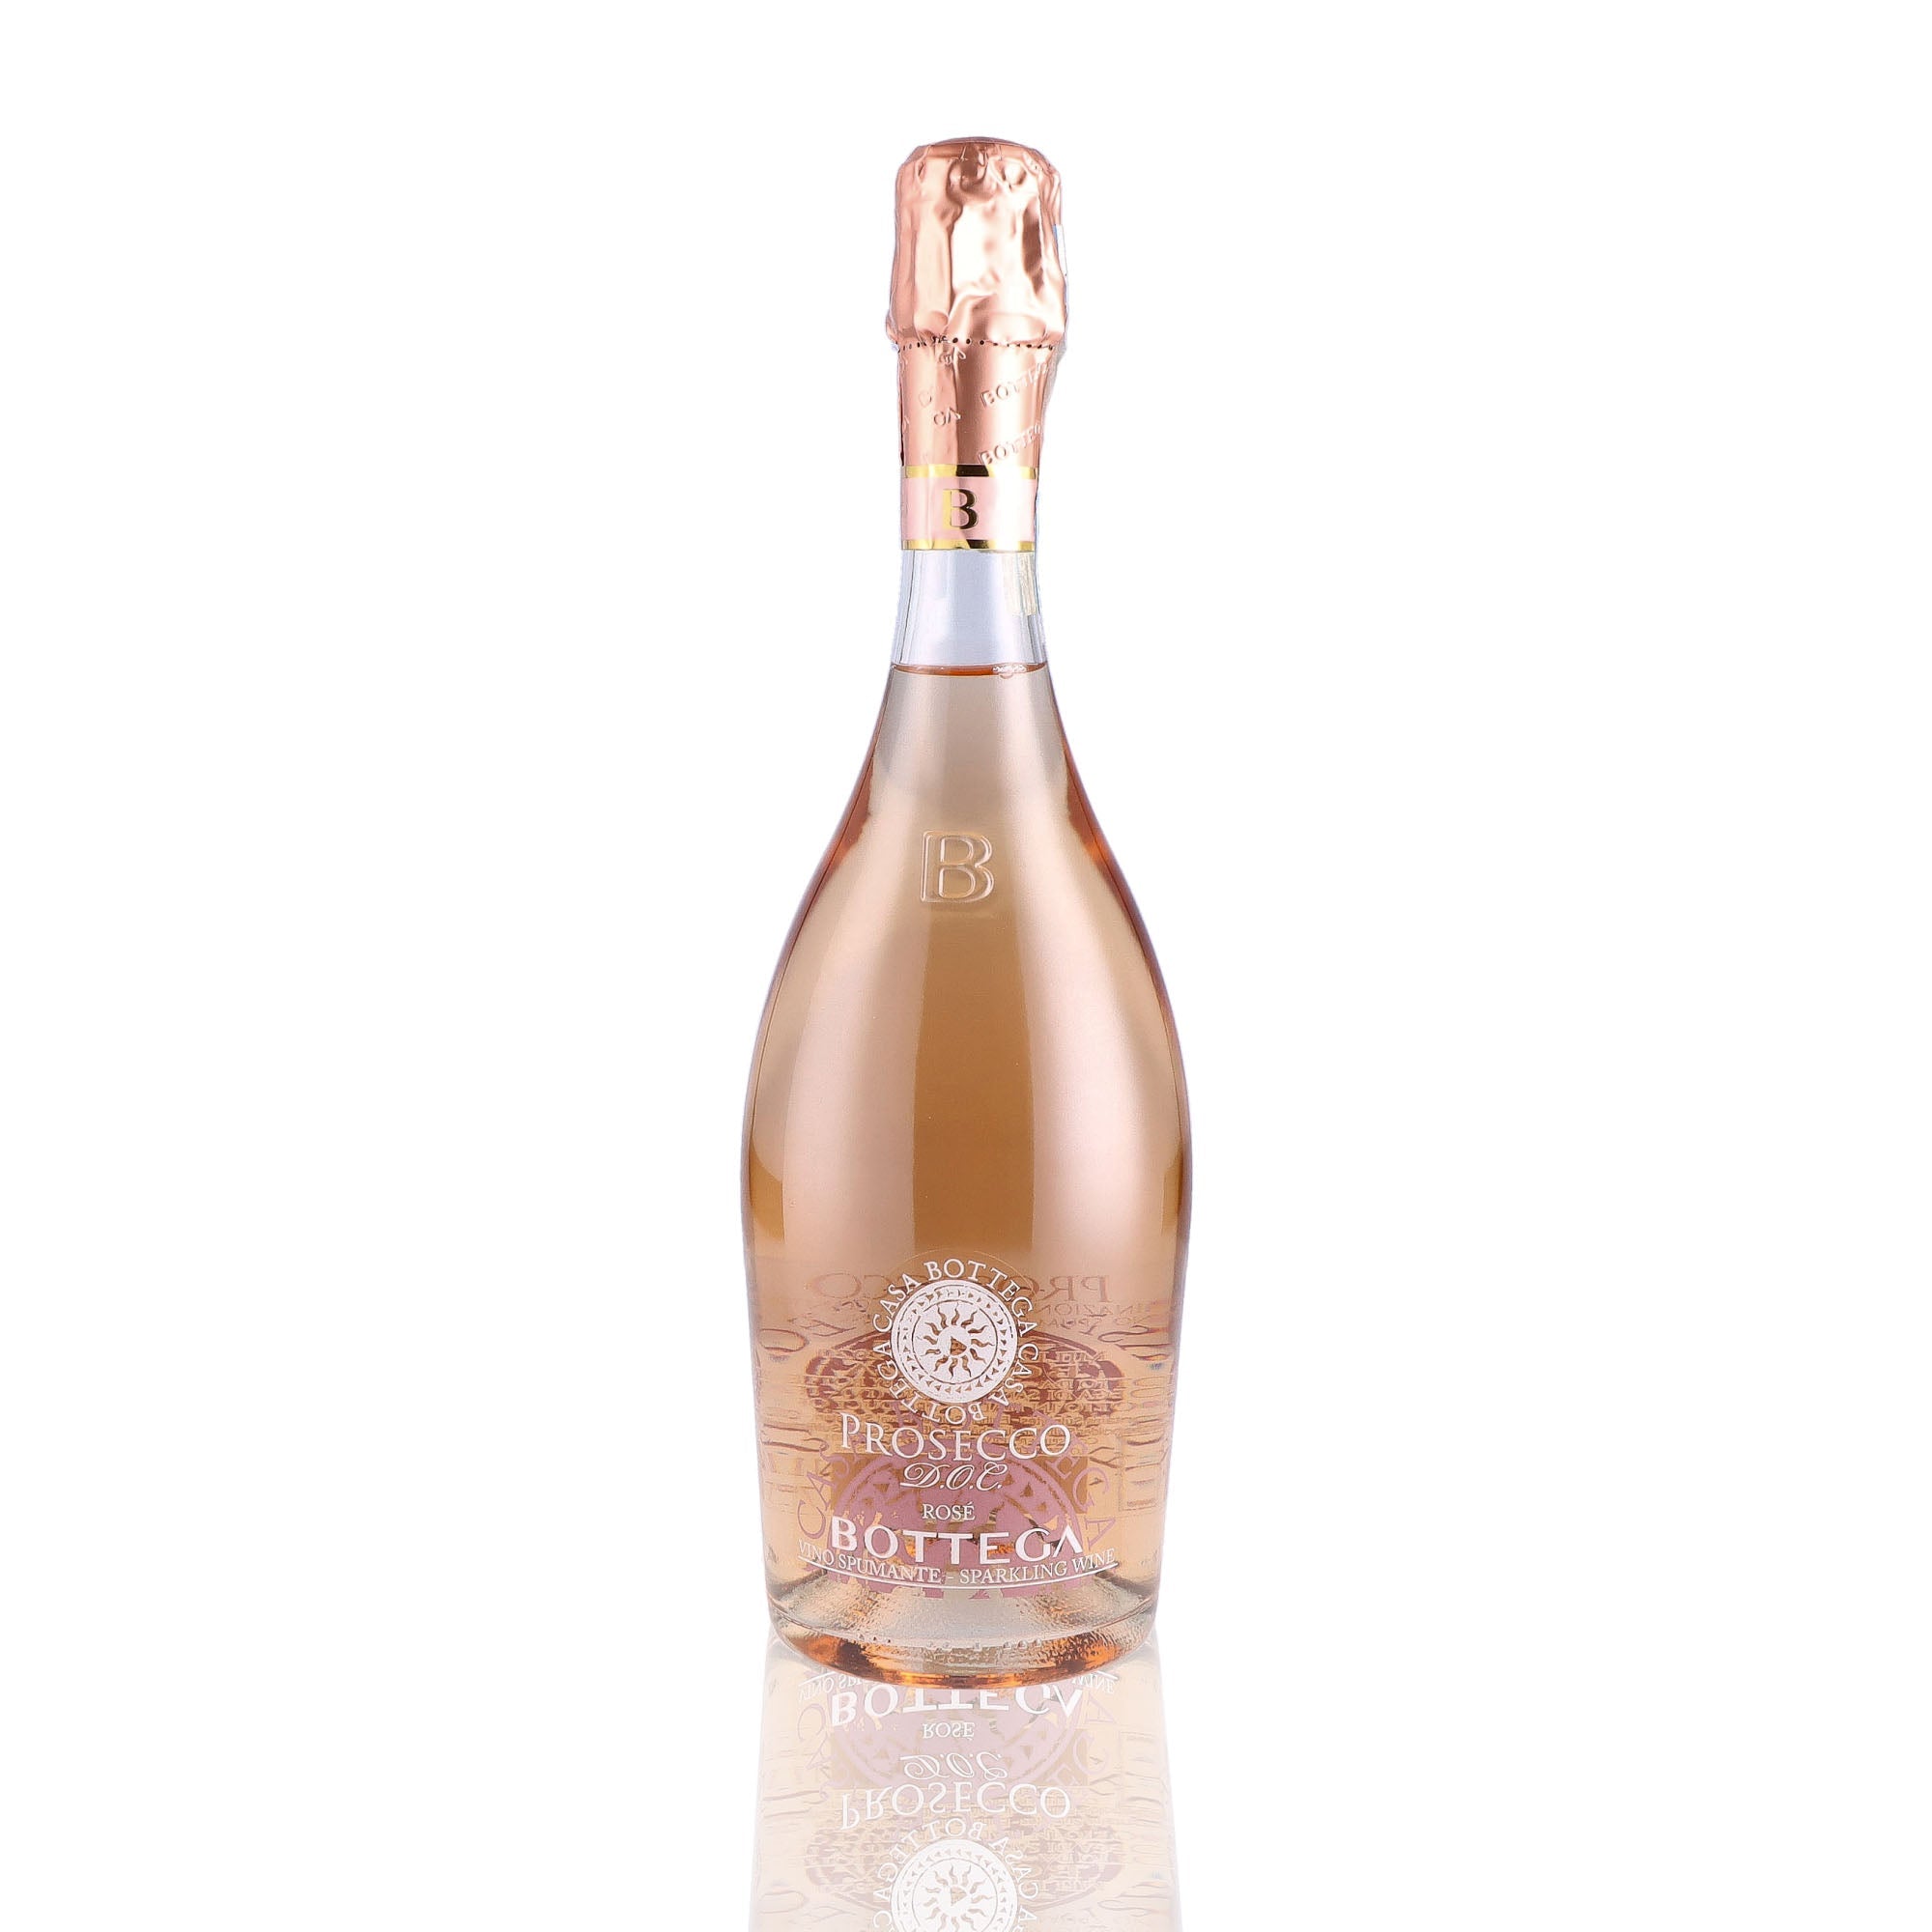 Une bouteille de prosecco de la marque Bottega, de type rosé, nommée Doc rosé.